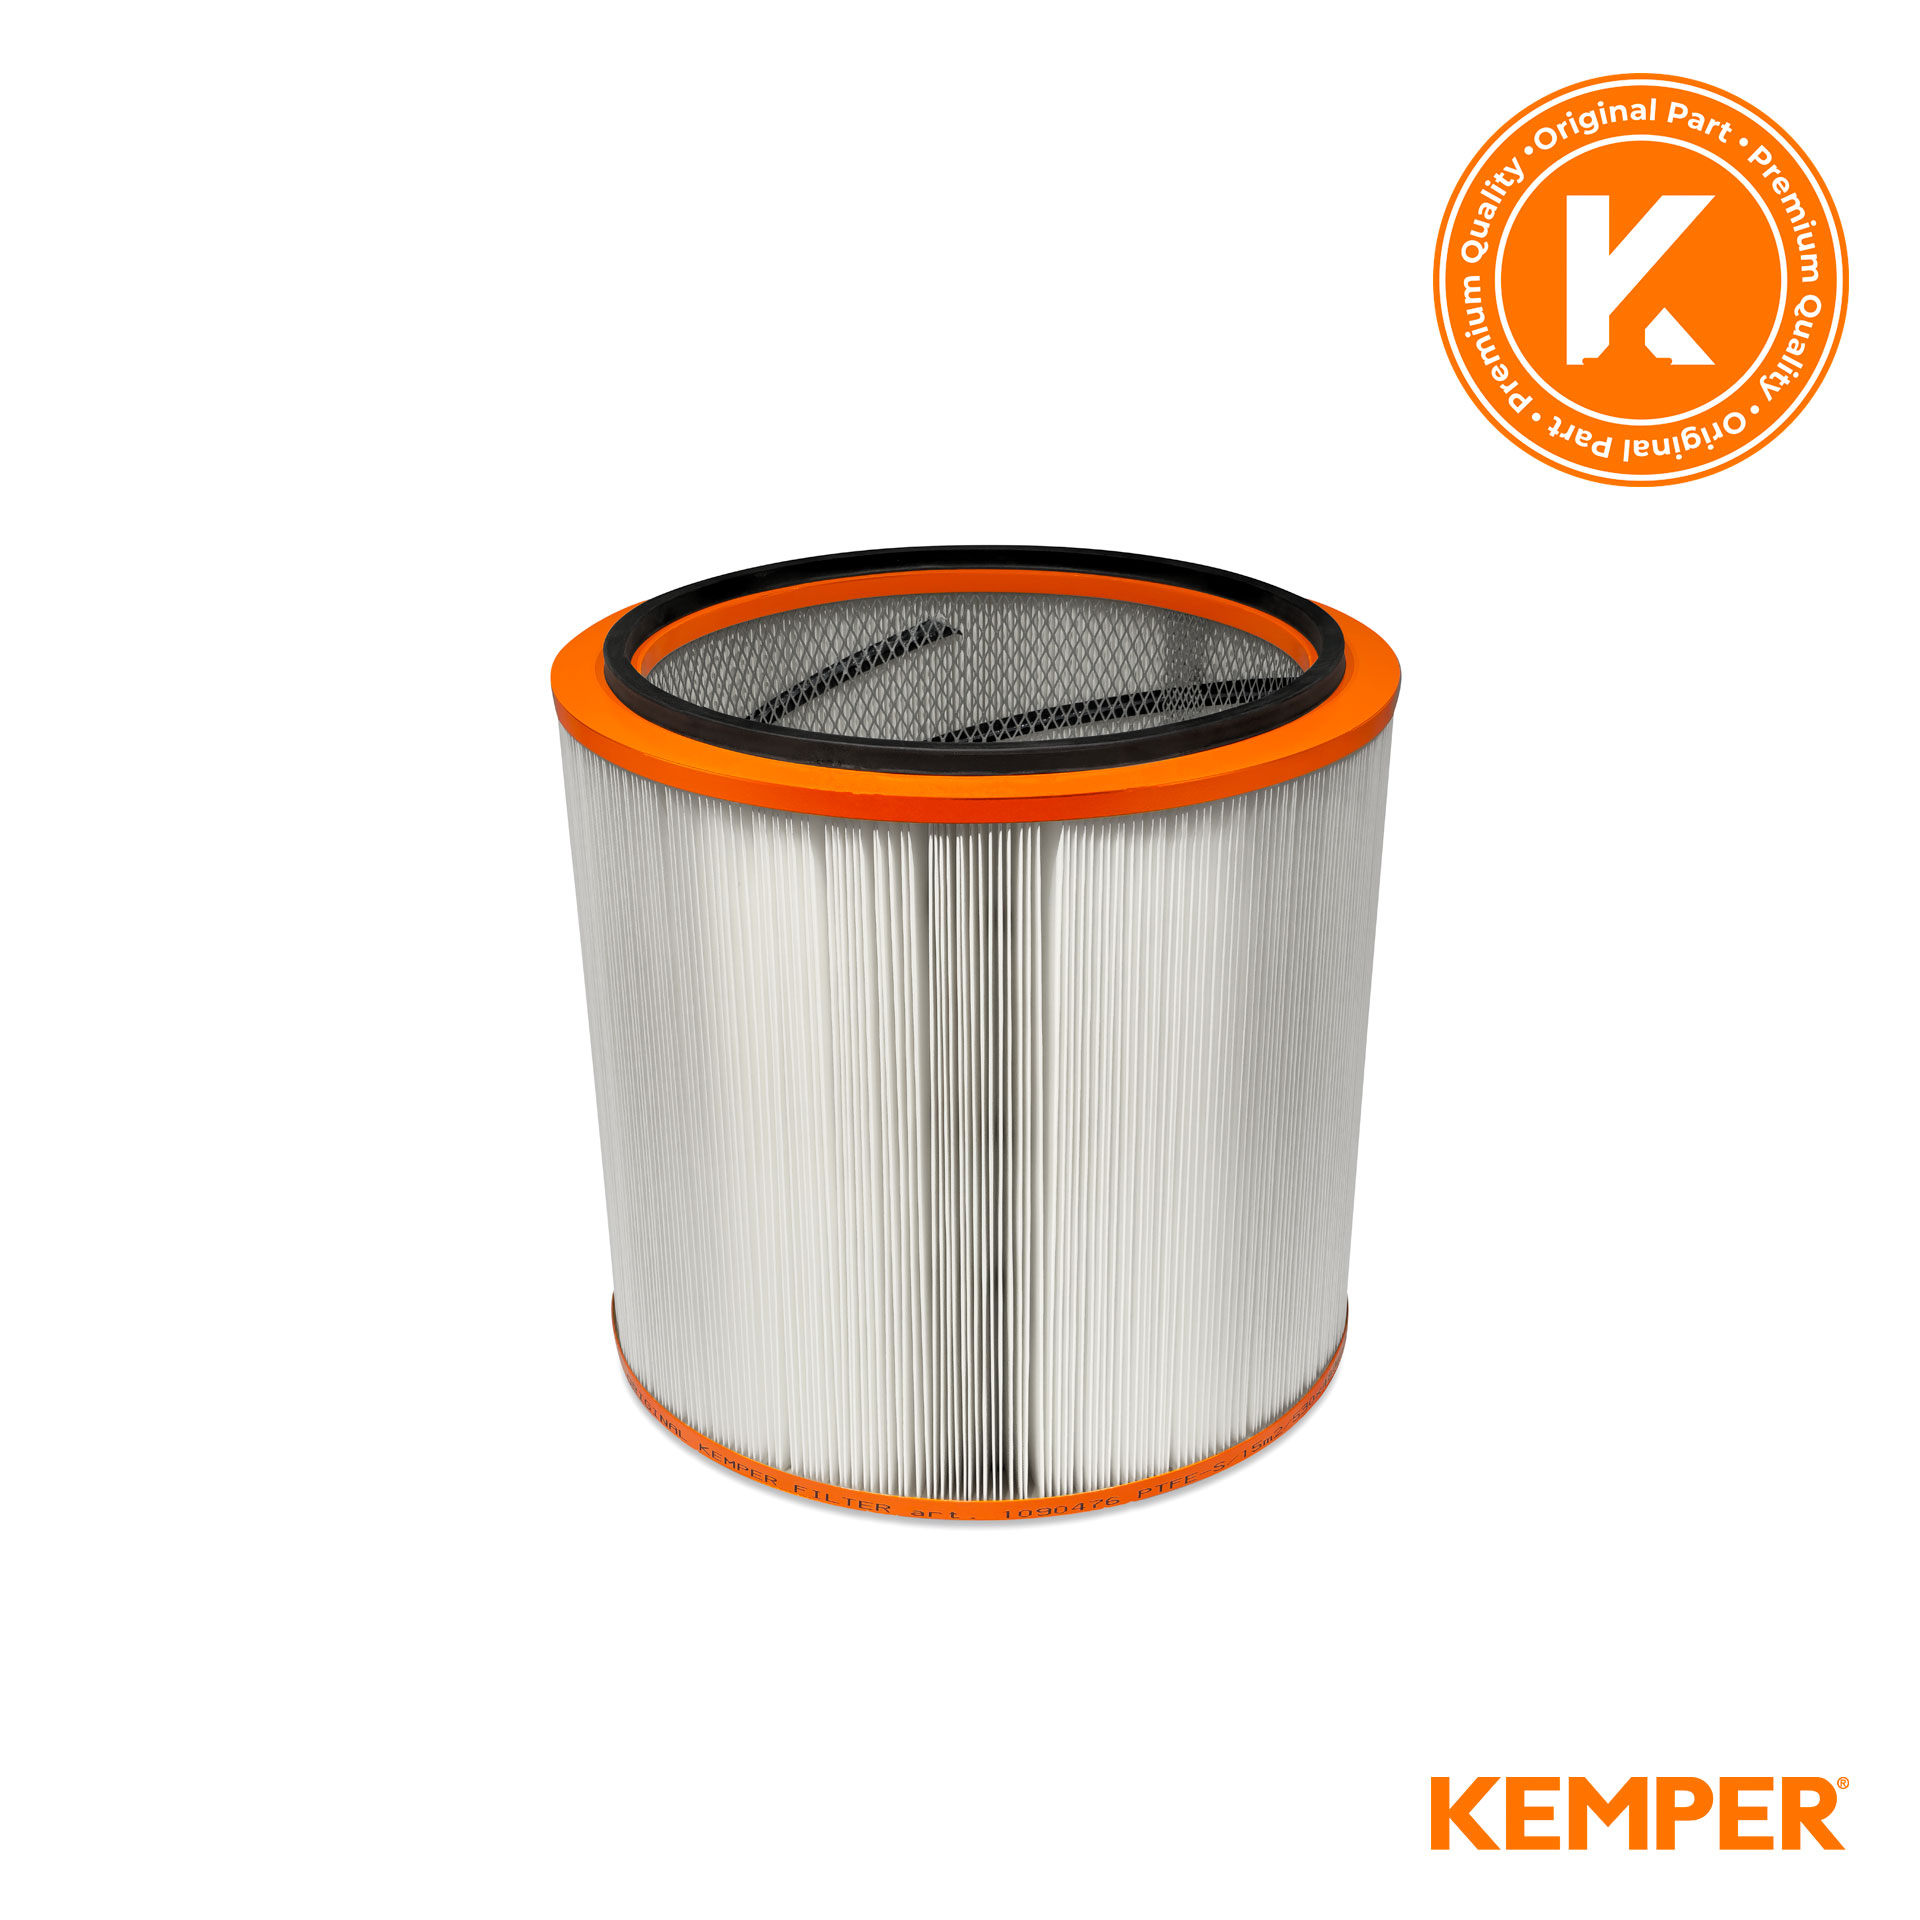 KEMPER MaxiFil Clean Filterpatrone - KemTex® ePTFE Membran - 15 m²